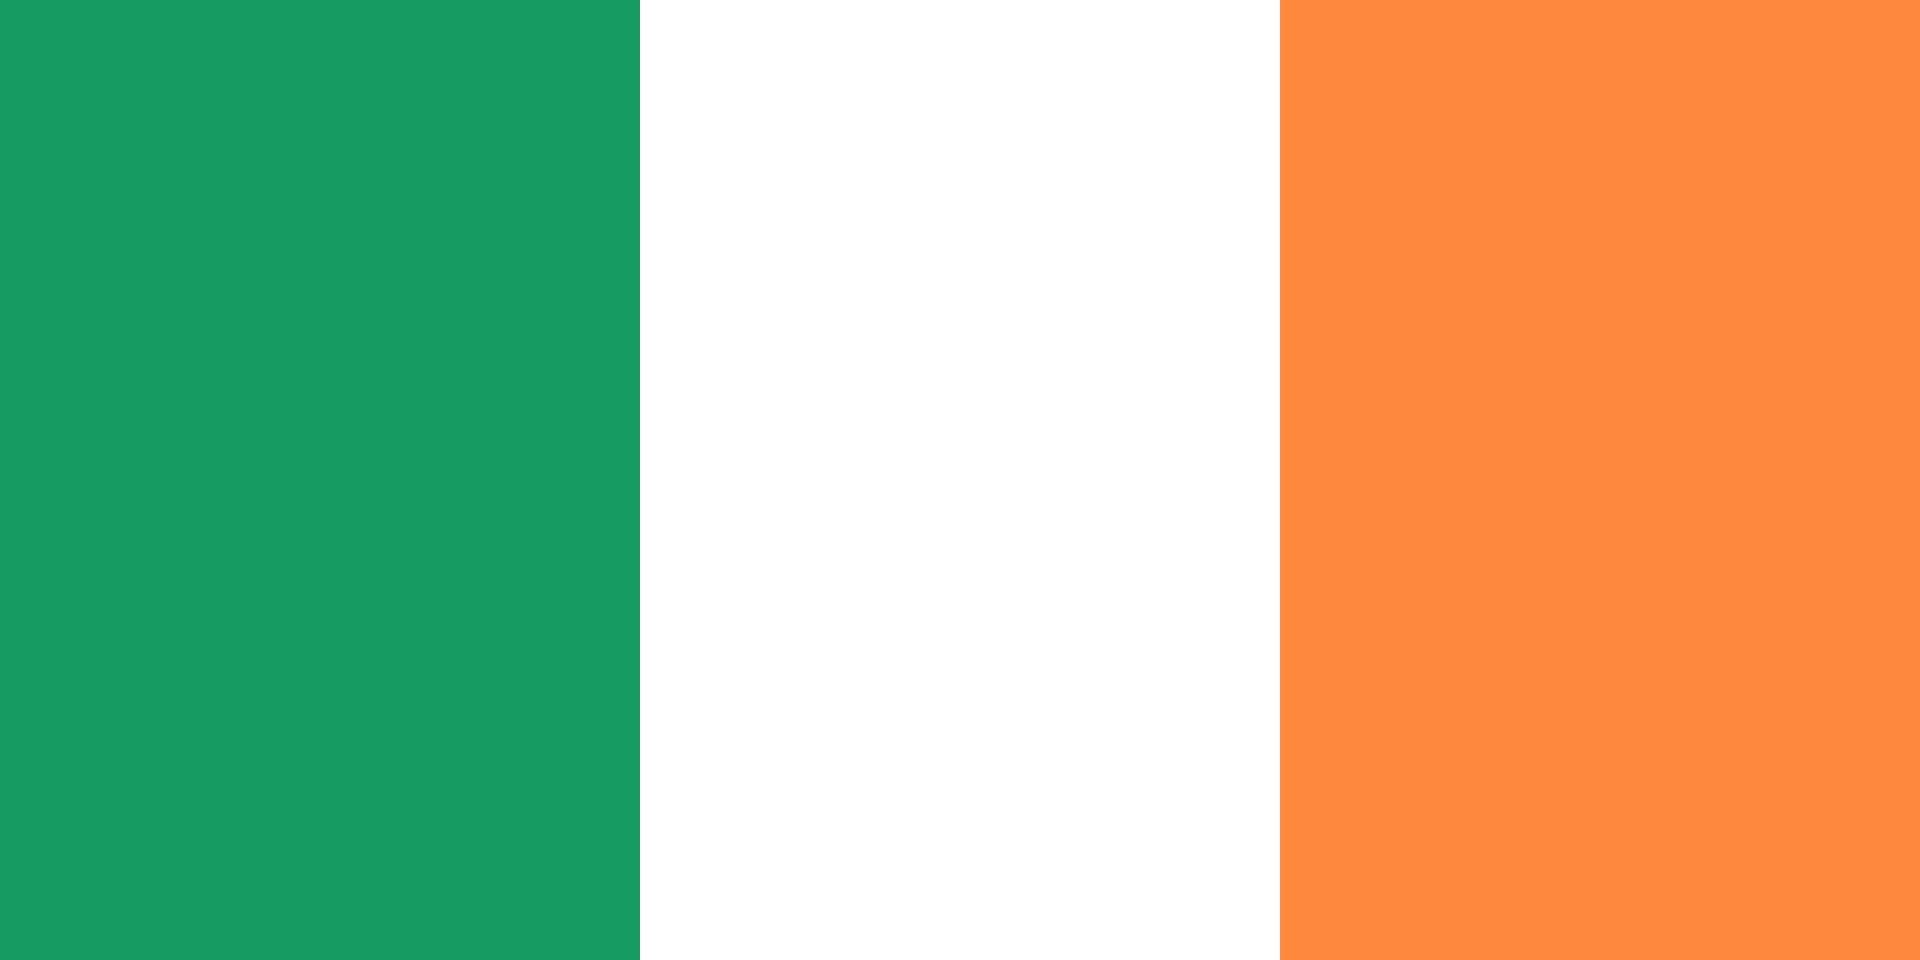 アイルランド国旗の色の意味とは？